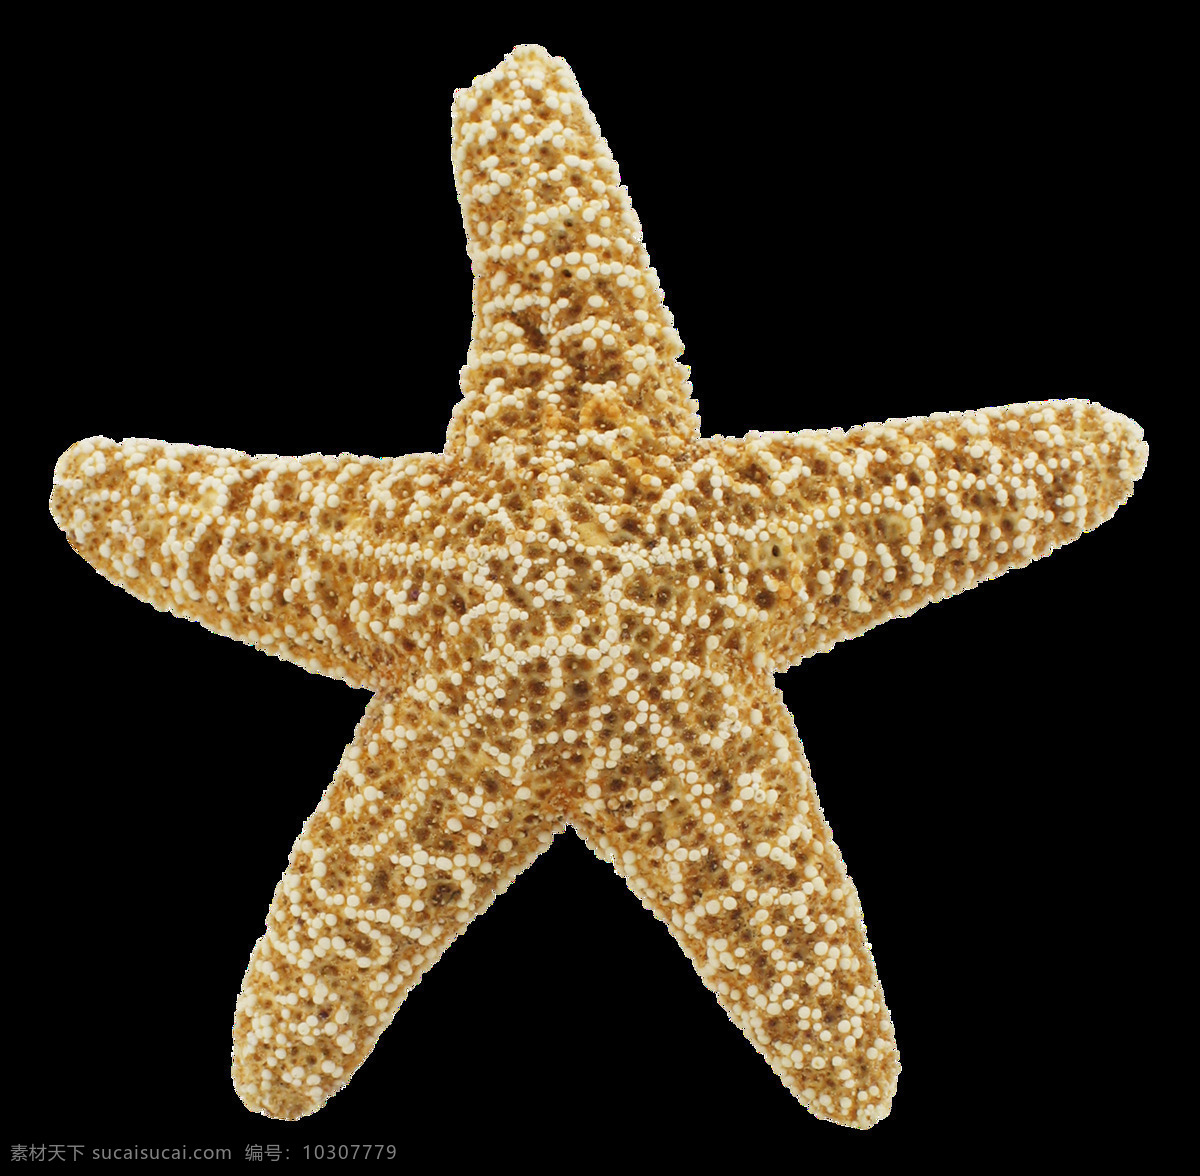 海星图片 海星 星鱼 星星 派大星 星 png图 透明图 免扣图 透明背景 透明底 抠图 生物世界 海洋生物